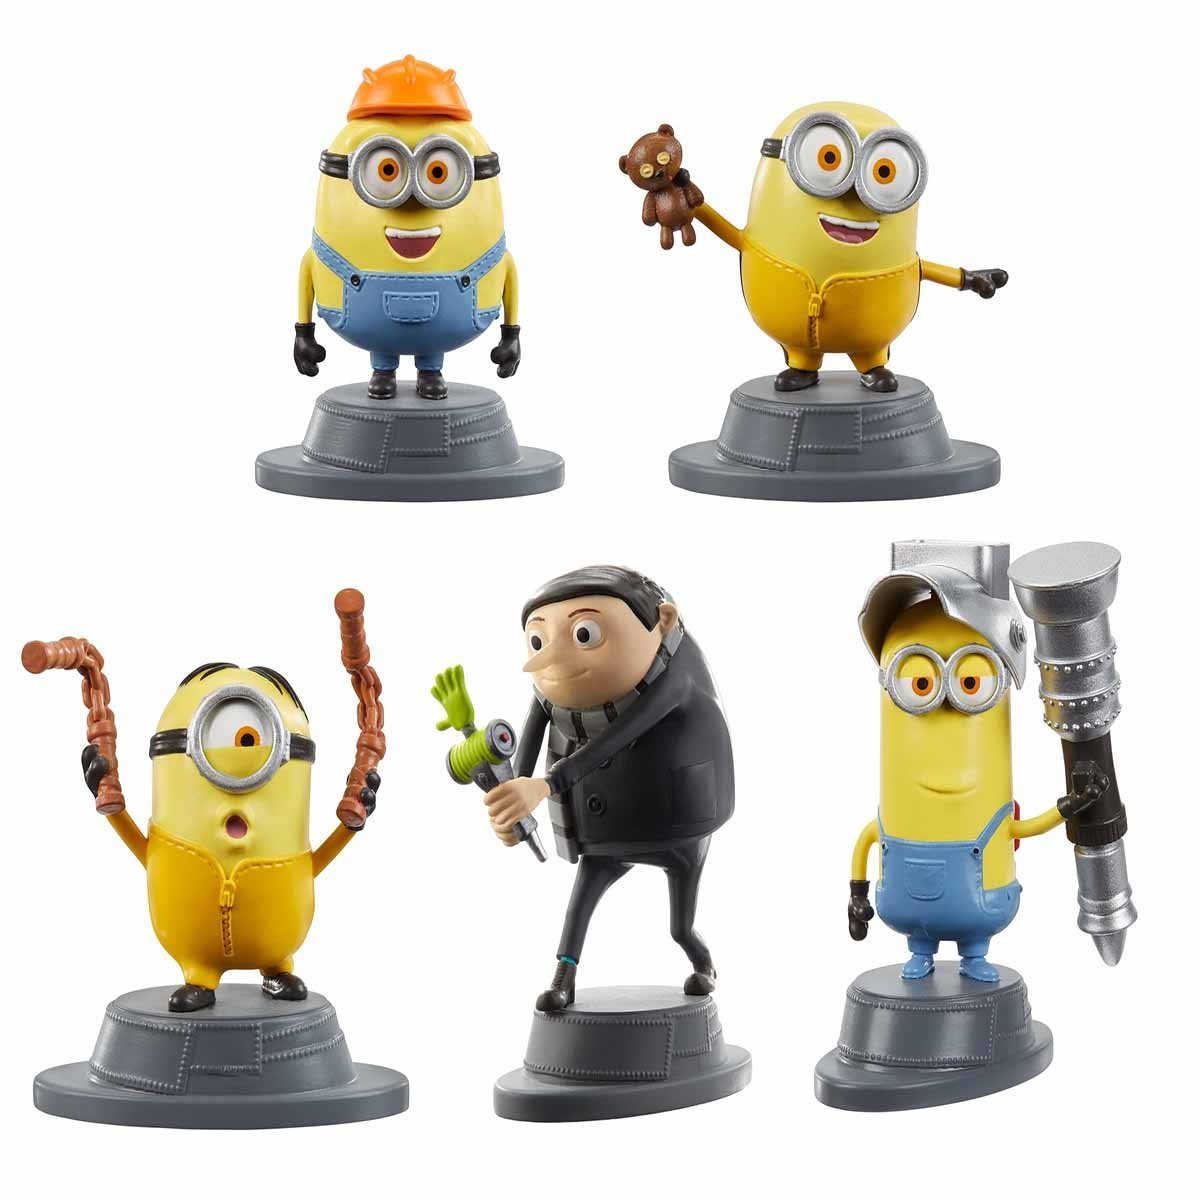 Mini Figuras Minions 5 Pack de Stuart, Jerry, Bob, Otto y Kevin